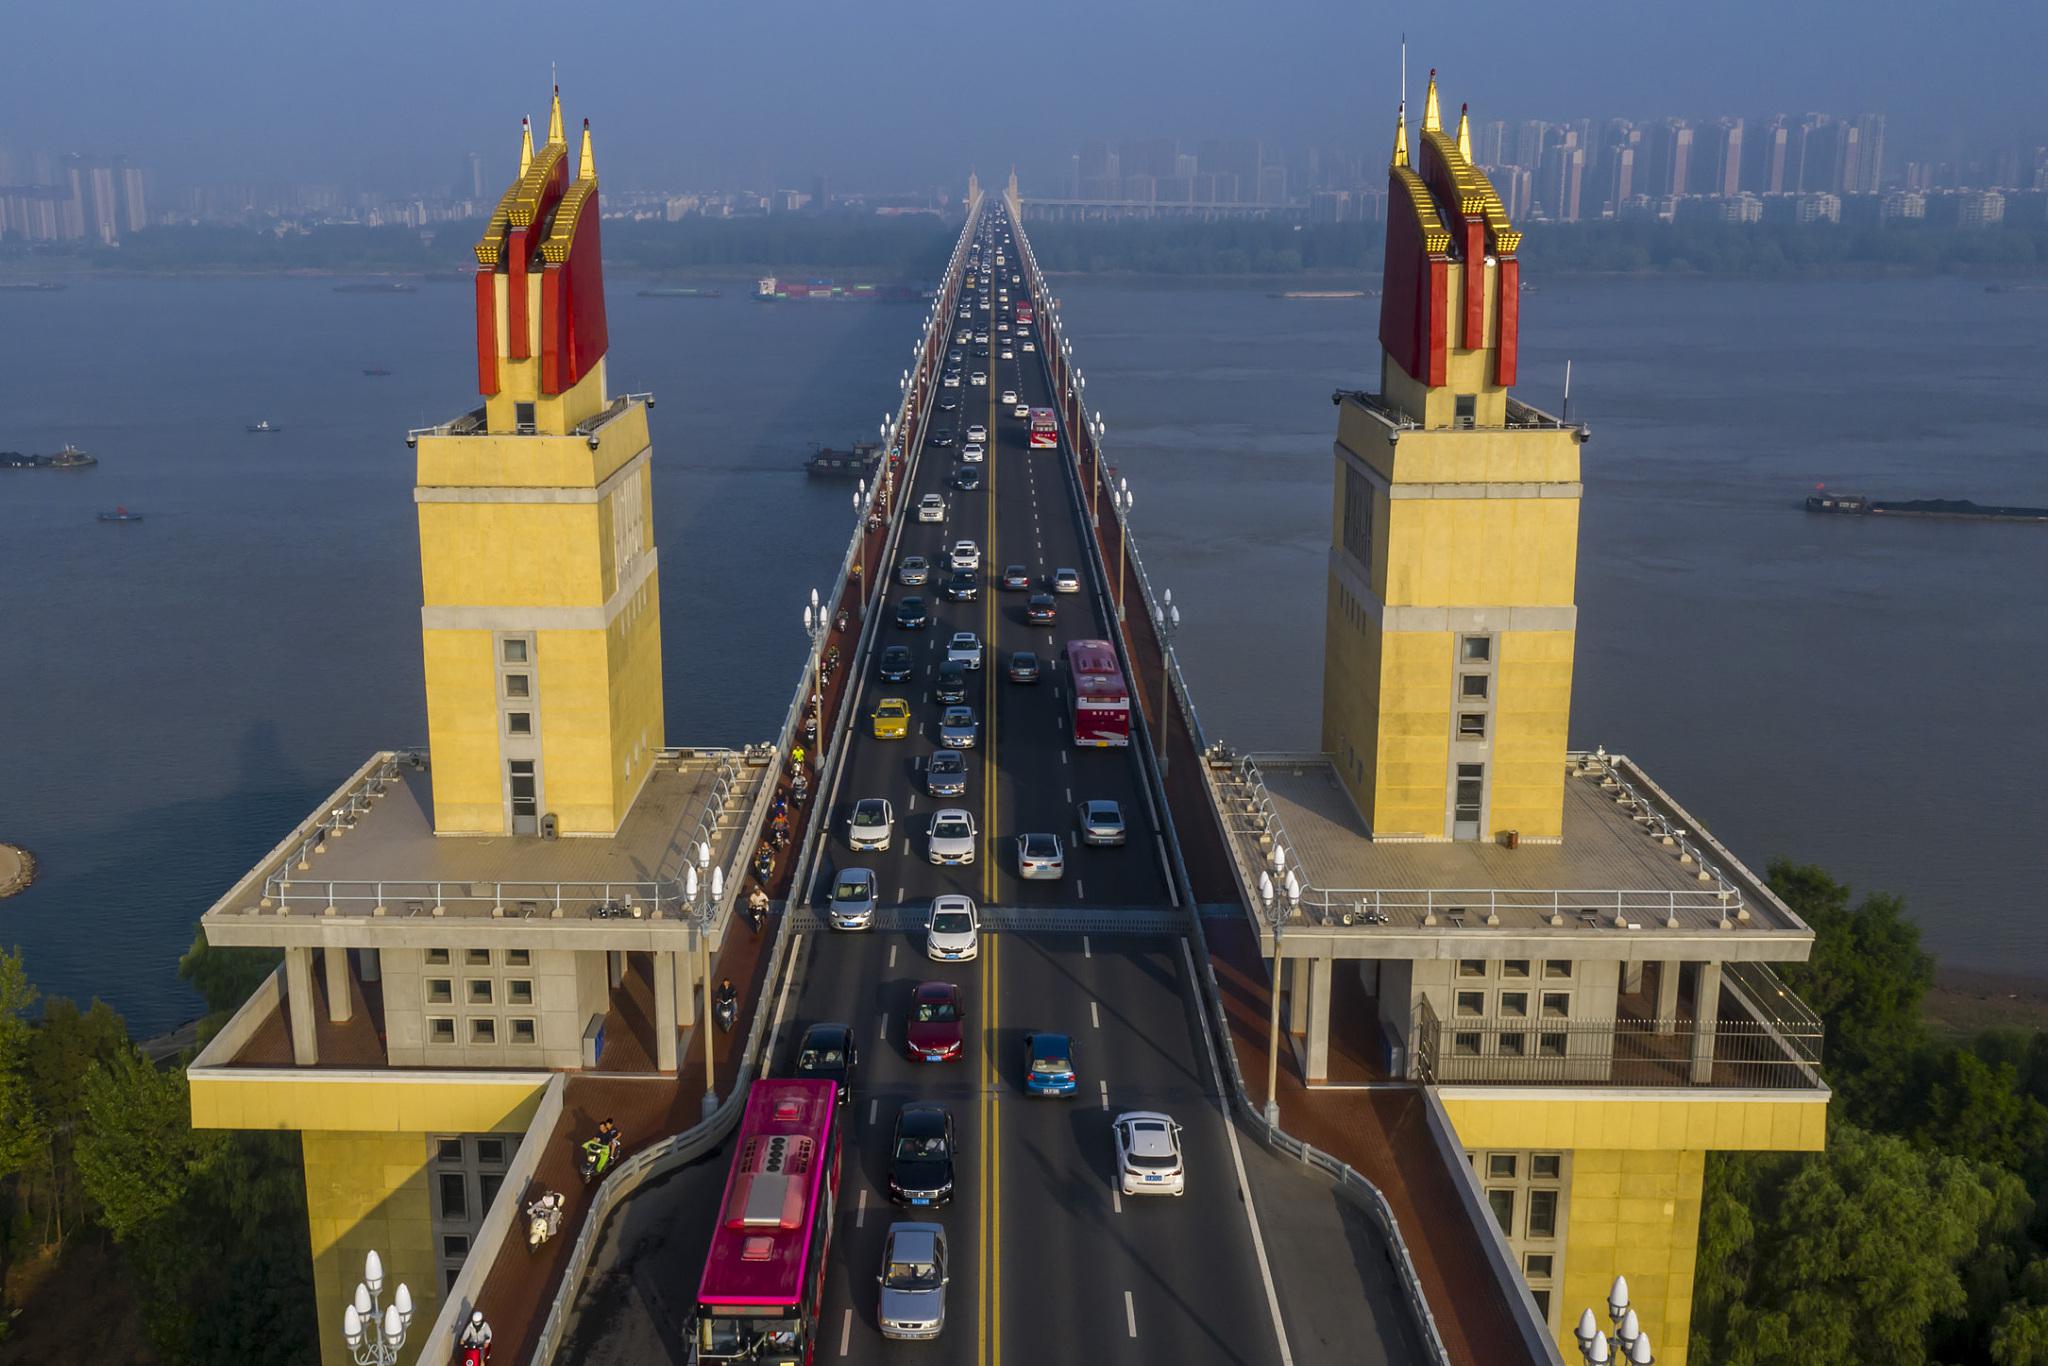 武汉长江大桥游玩攻略 武汉长江大桥位于湖北省武汉市,是中国第一座